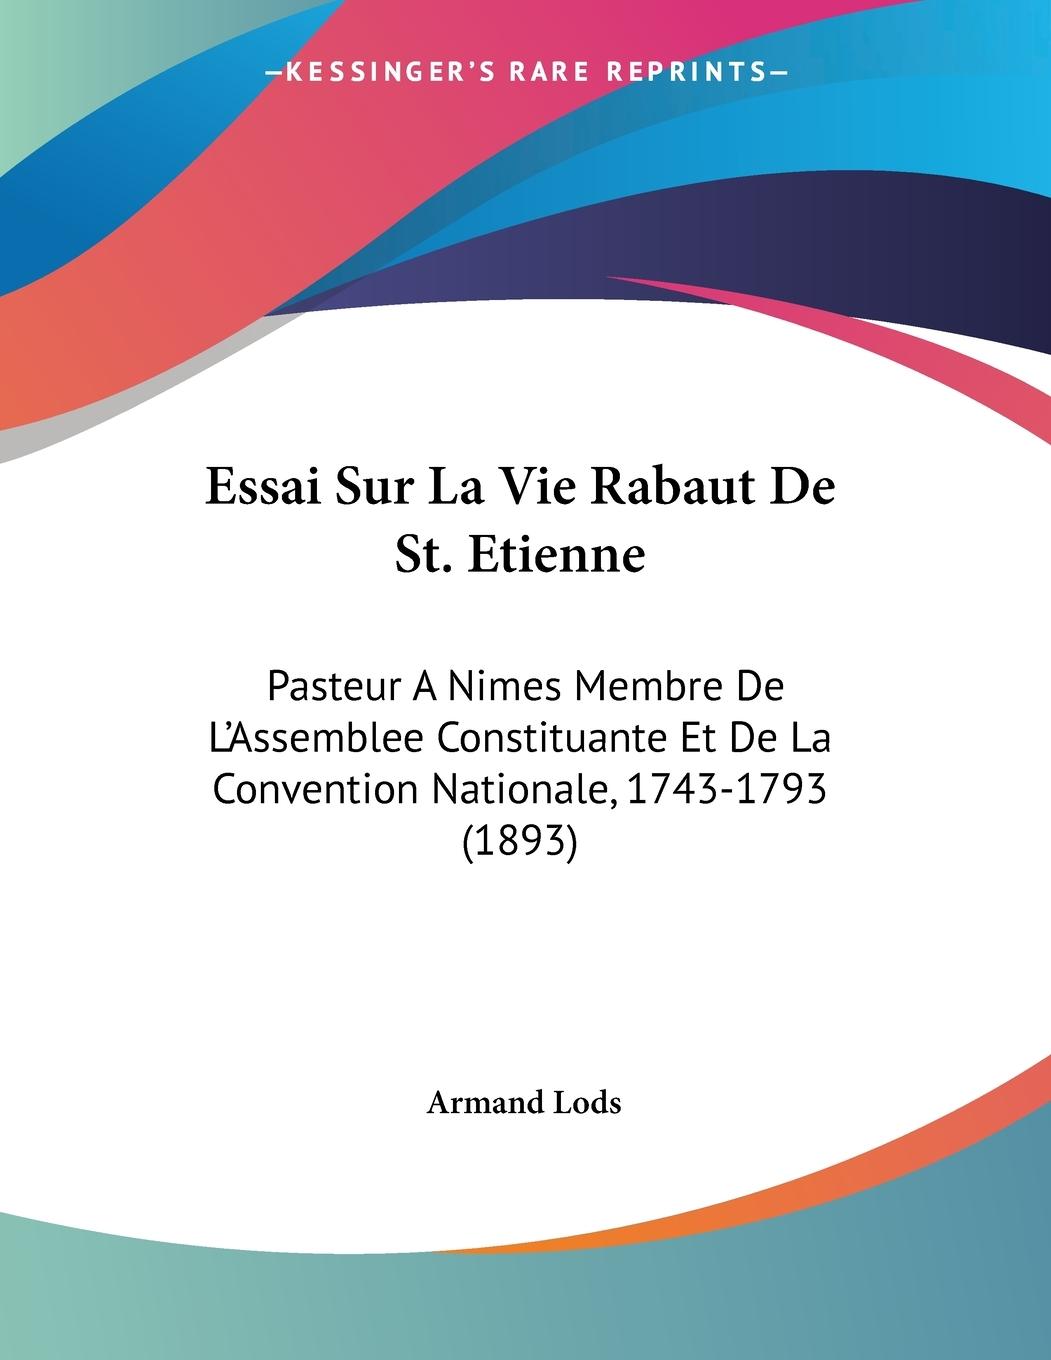 Essai Sur La Vie Rabaut De St. Etienne - Lods, Armand